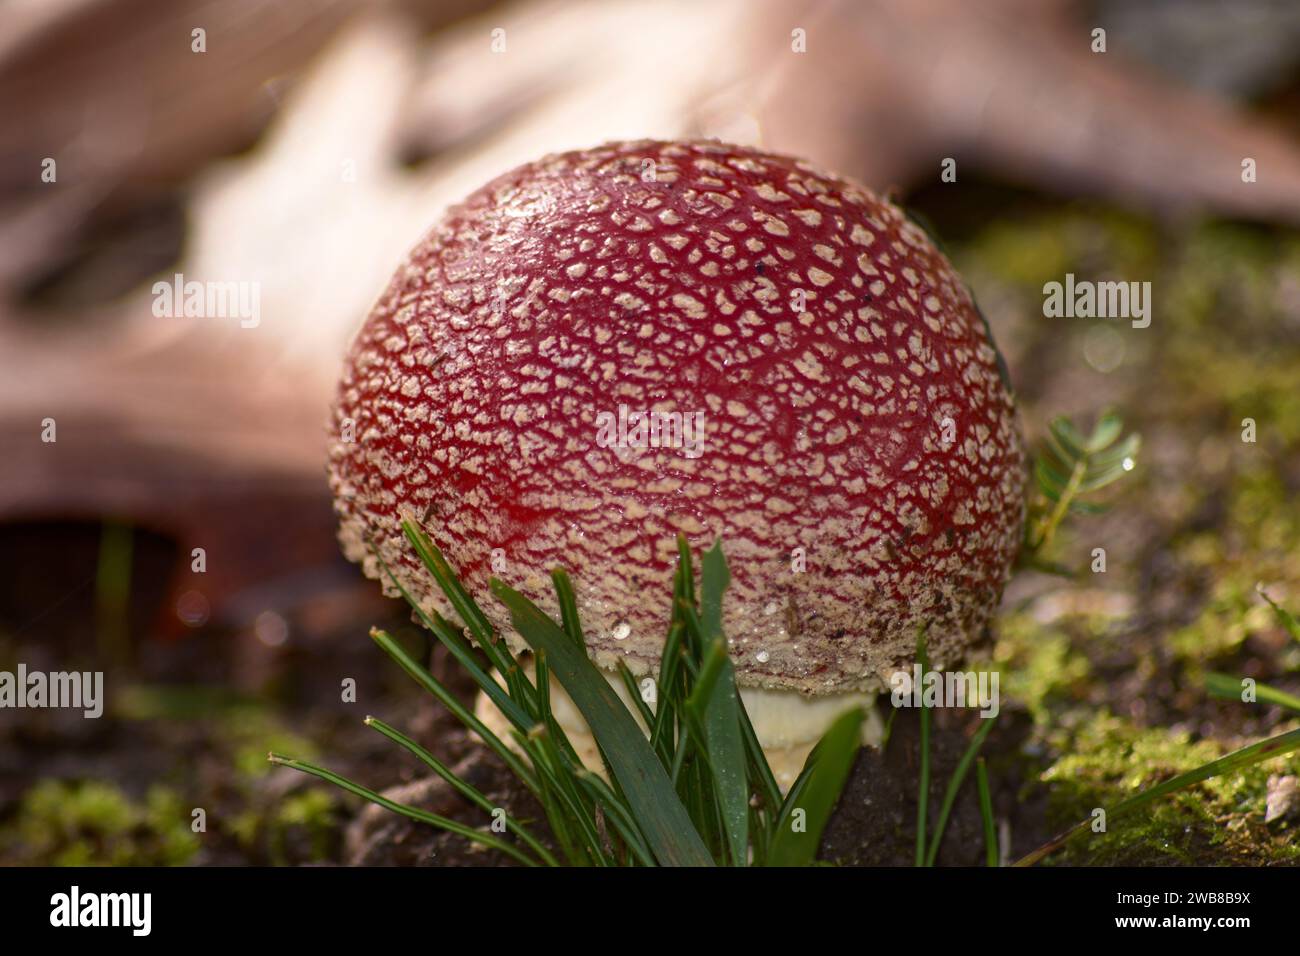 Fungo Amanita muscaria che emerge dal terreno a forma di uovo, avvolto in tessuto spugnoso Foto Stock